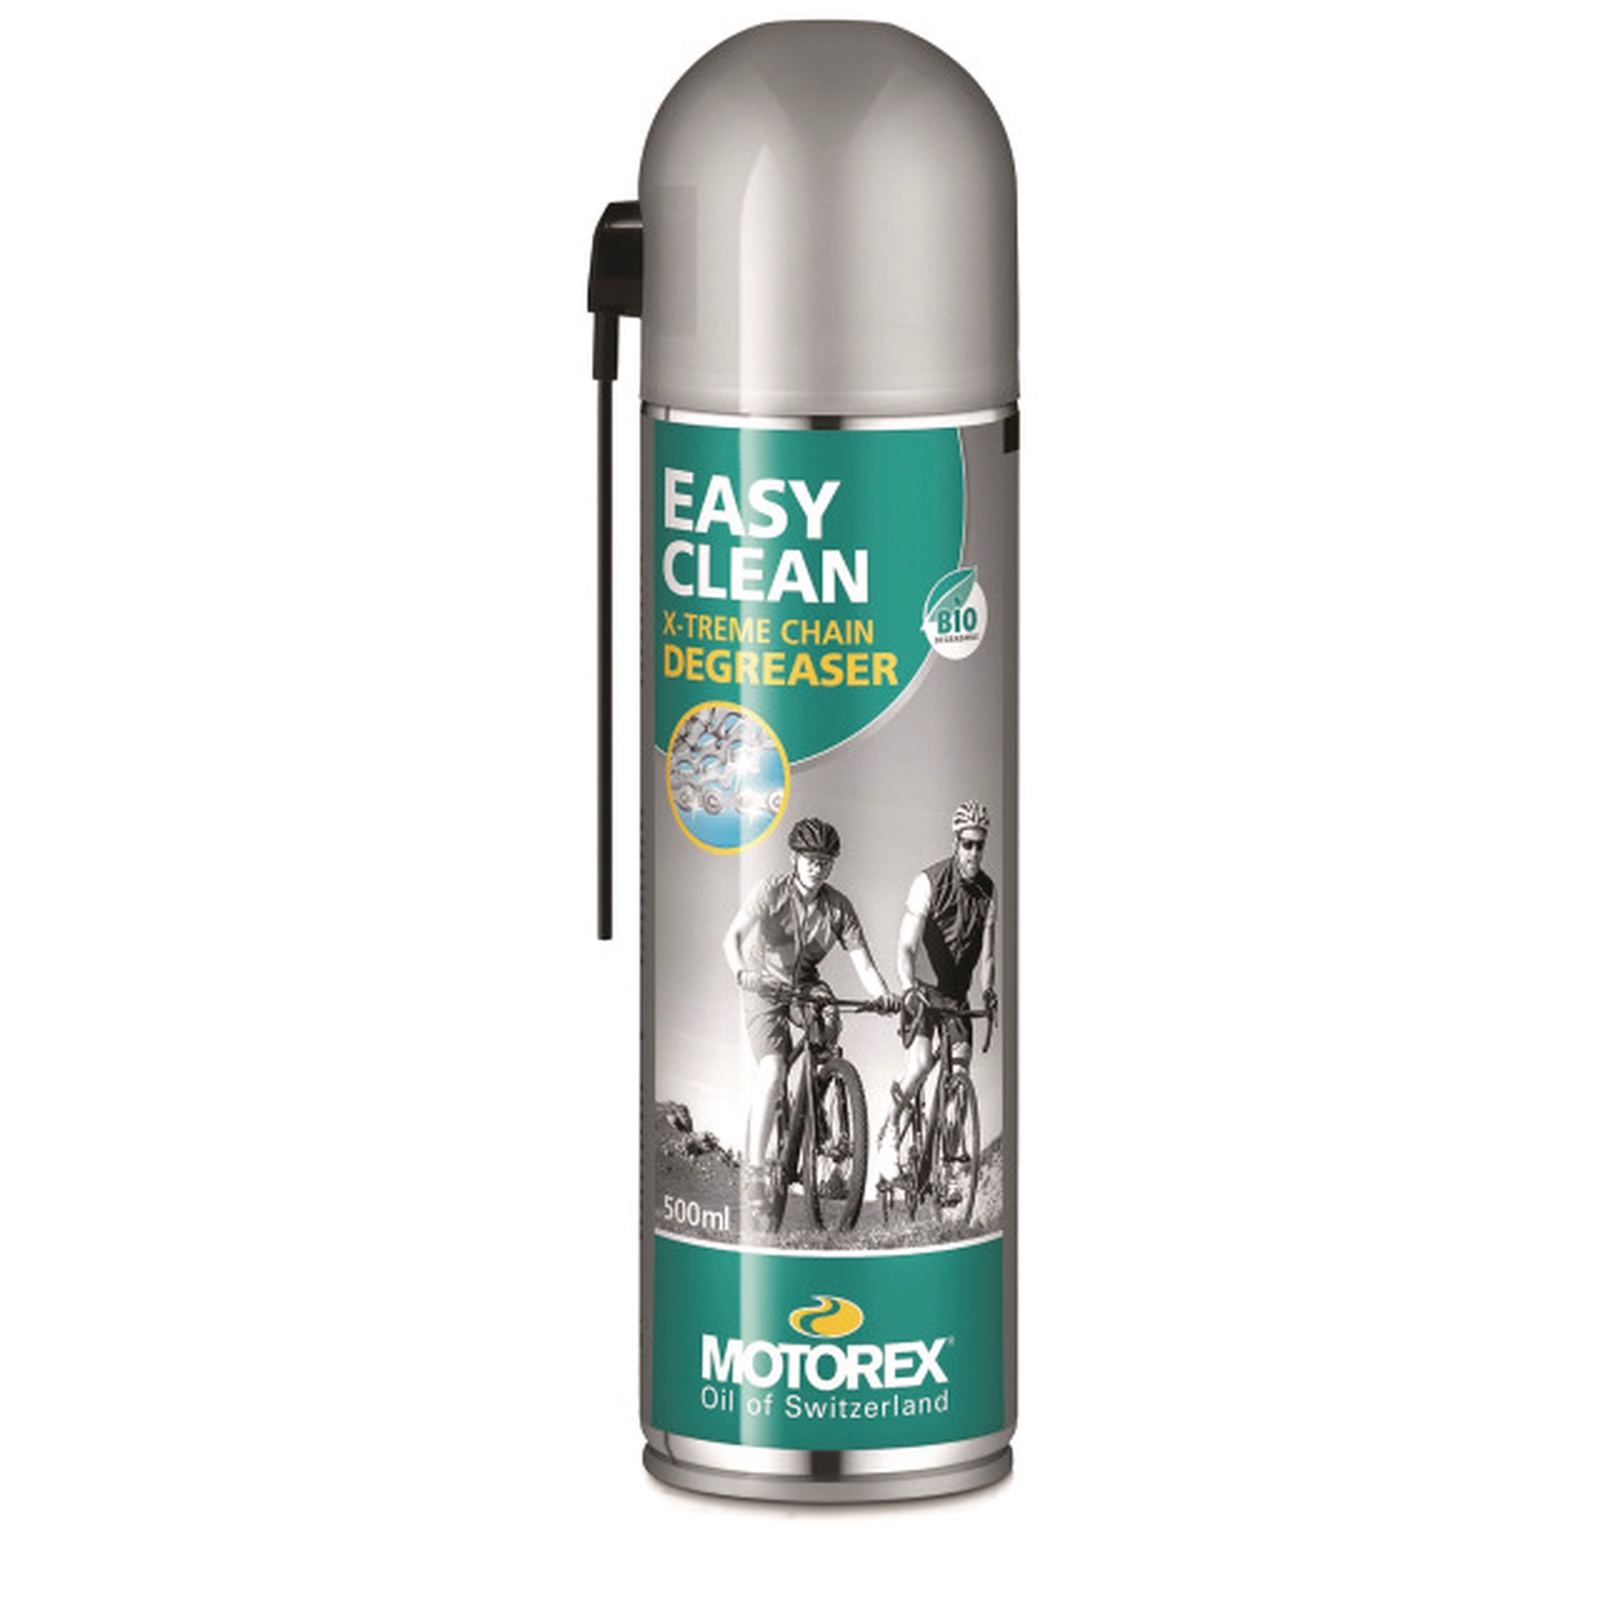 Easy Clean dégraissant spray 500 ml